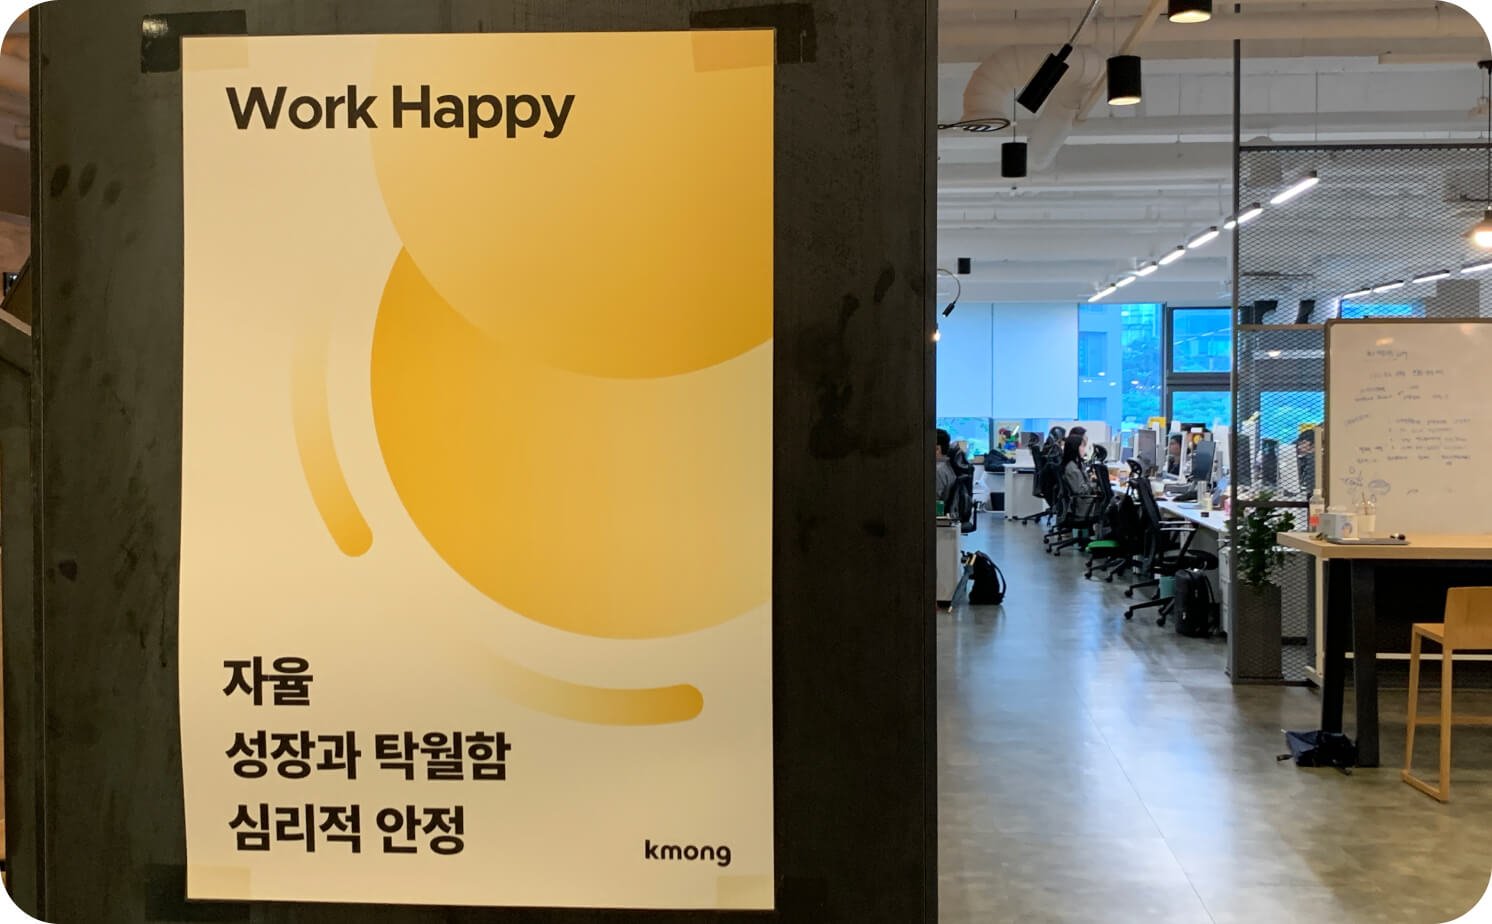 크몽 사무실에 work happy가 적혀있는 포스터가 붙어있다.